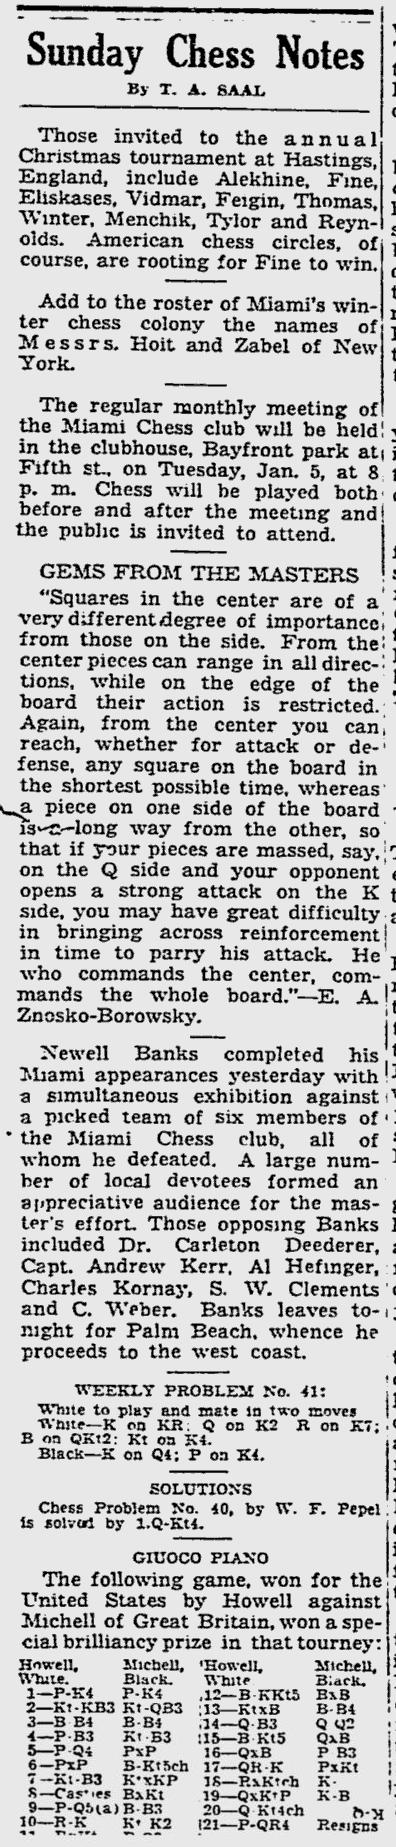 1936.12.27-01 Miami Daily News.jpg